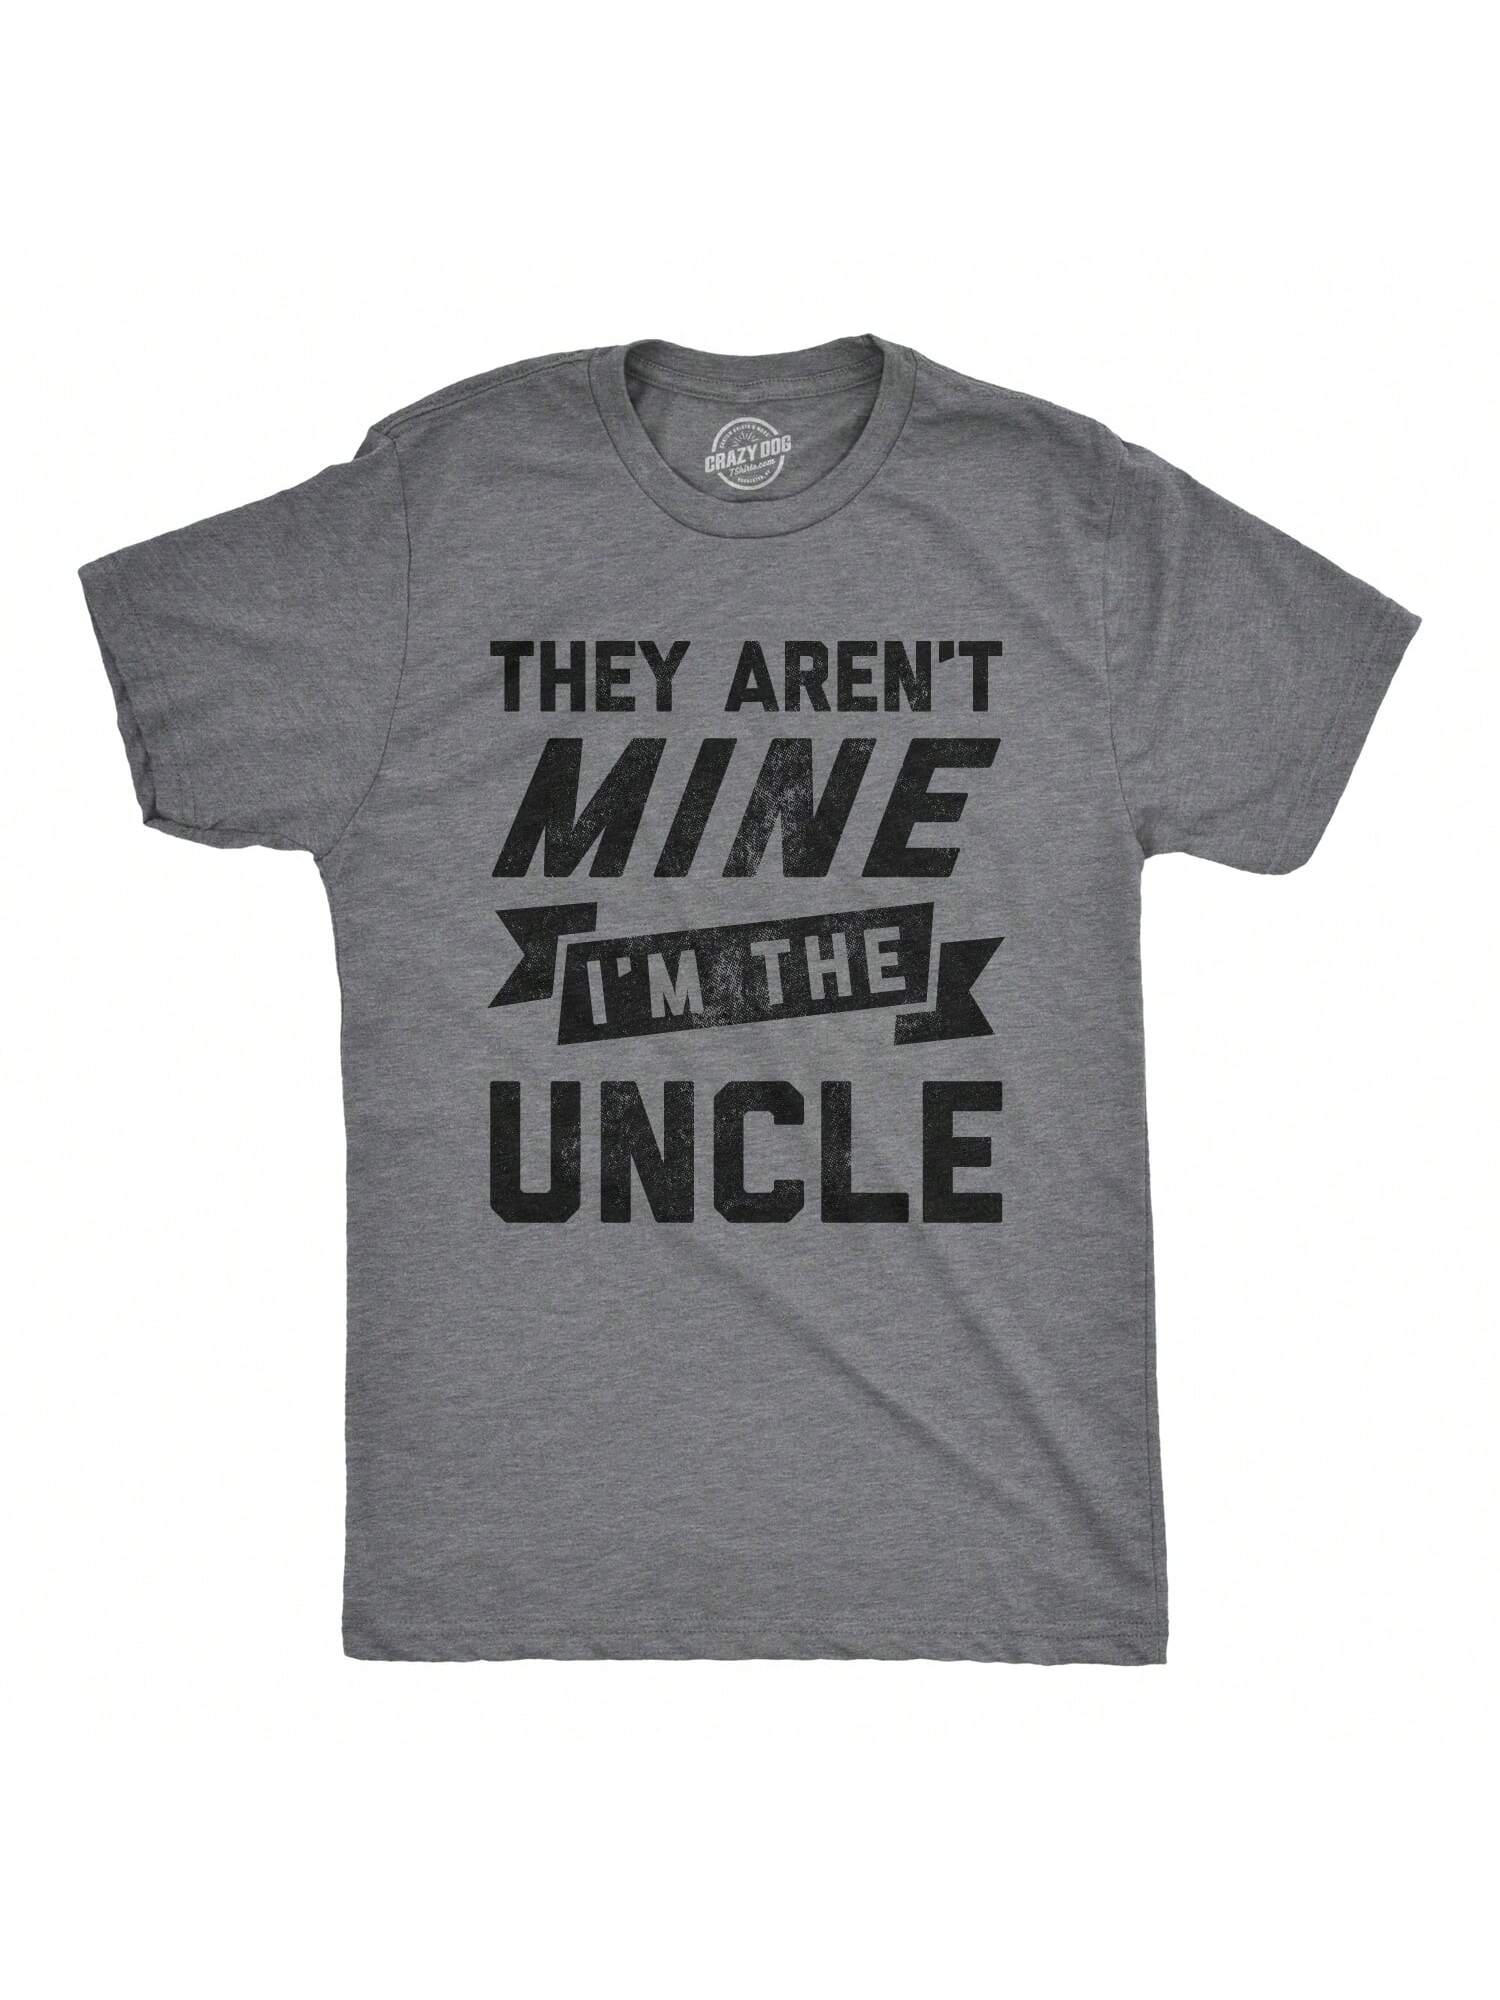 Мужская футболка «Они не мои» «Я дядя», темный хизер грей - они не мои мои приоритеты серый